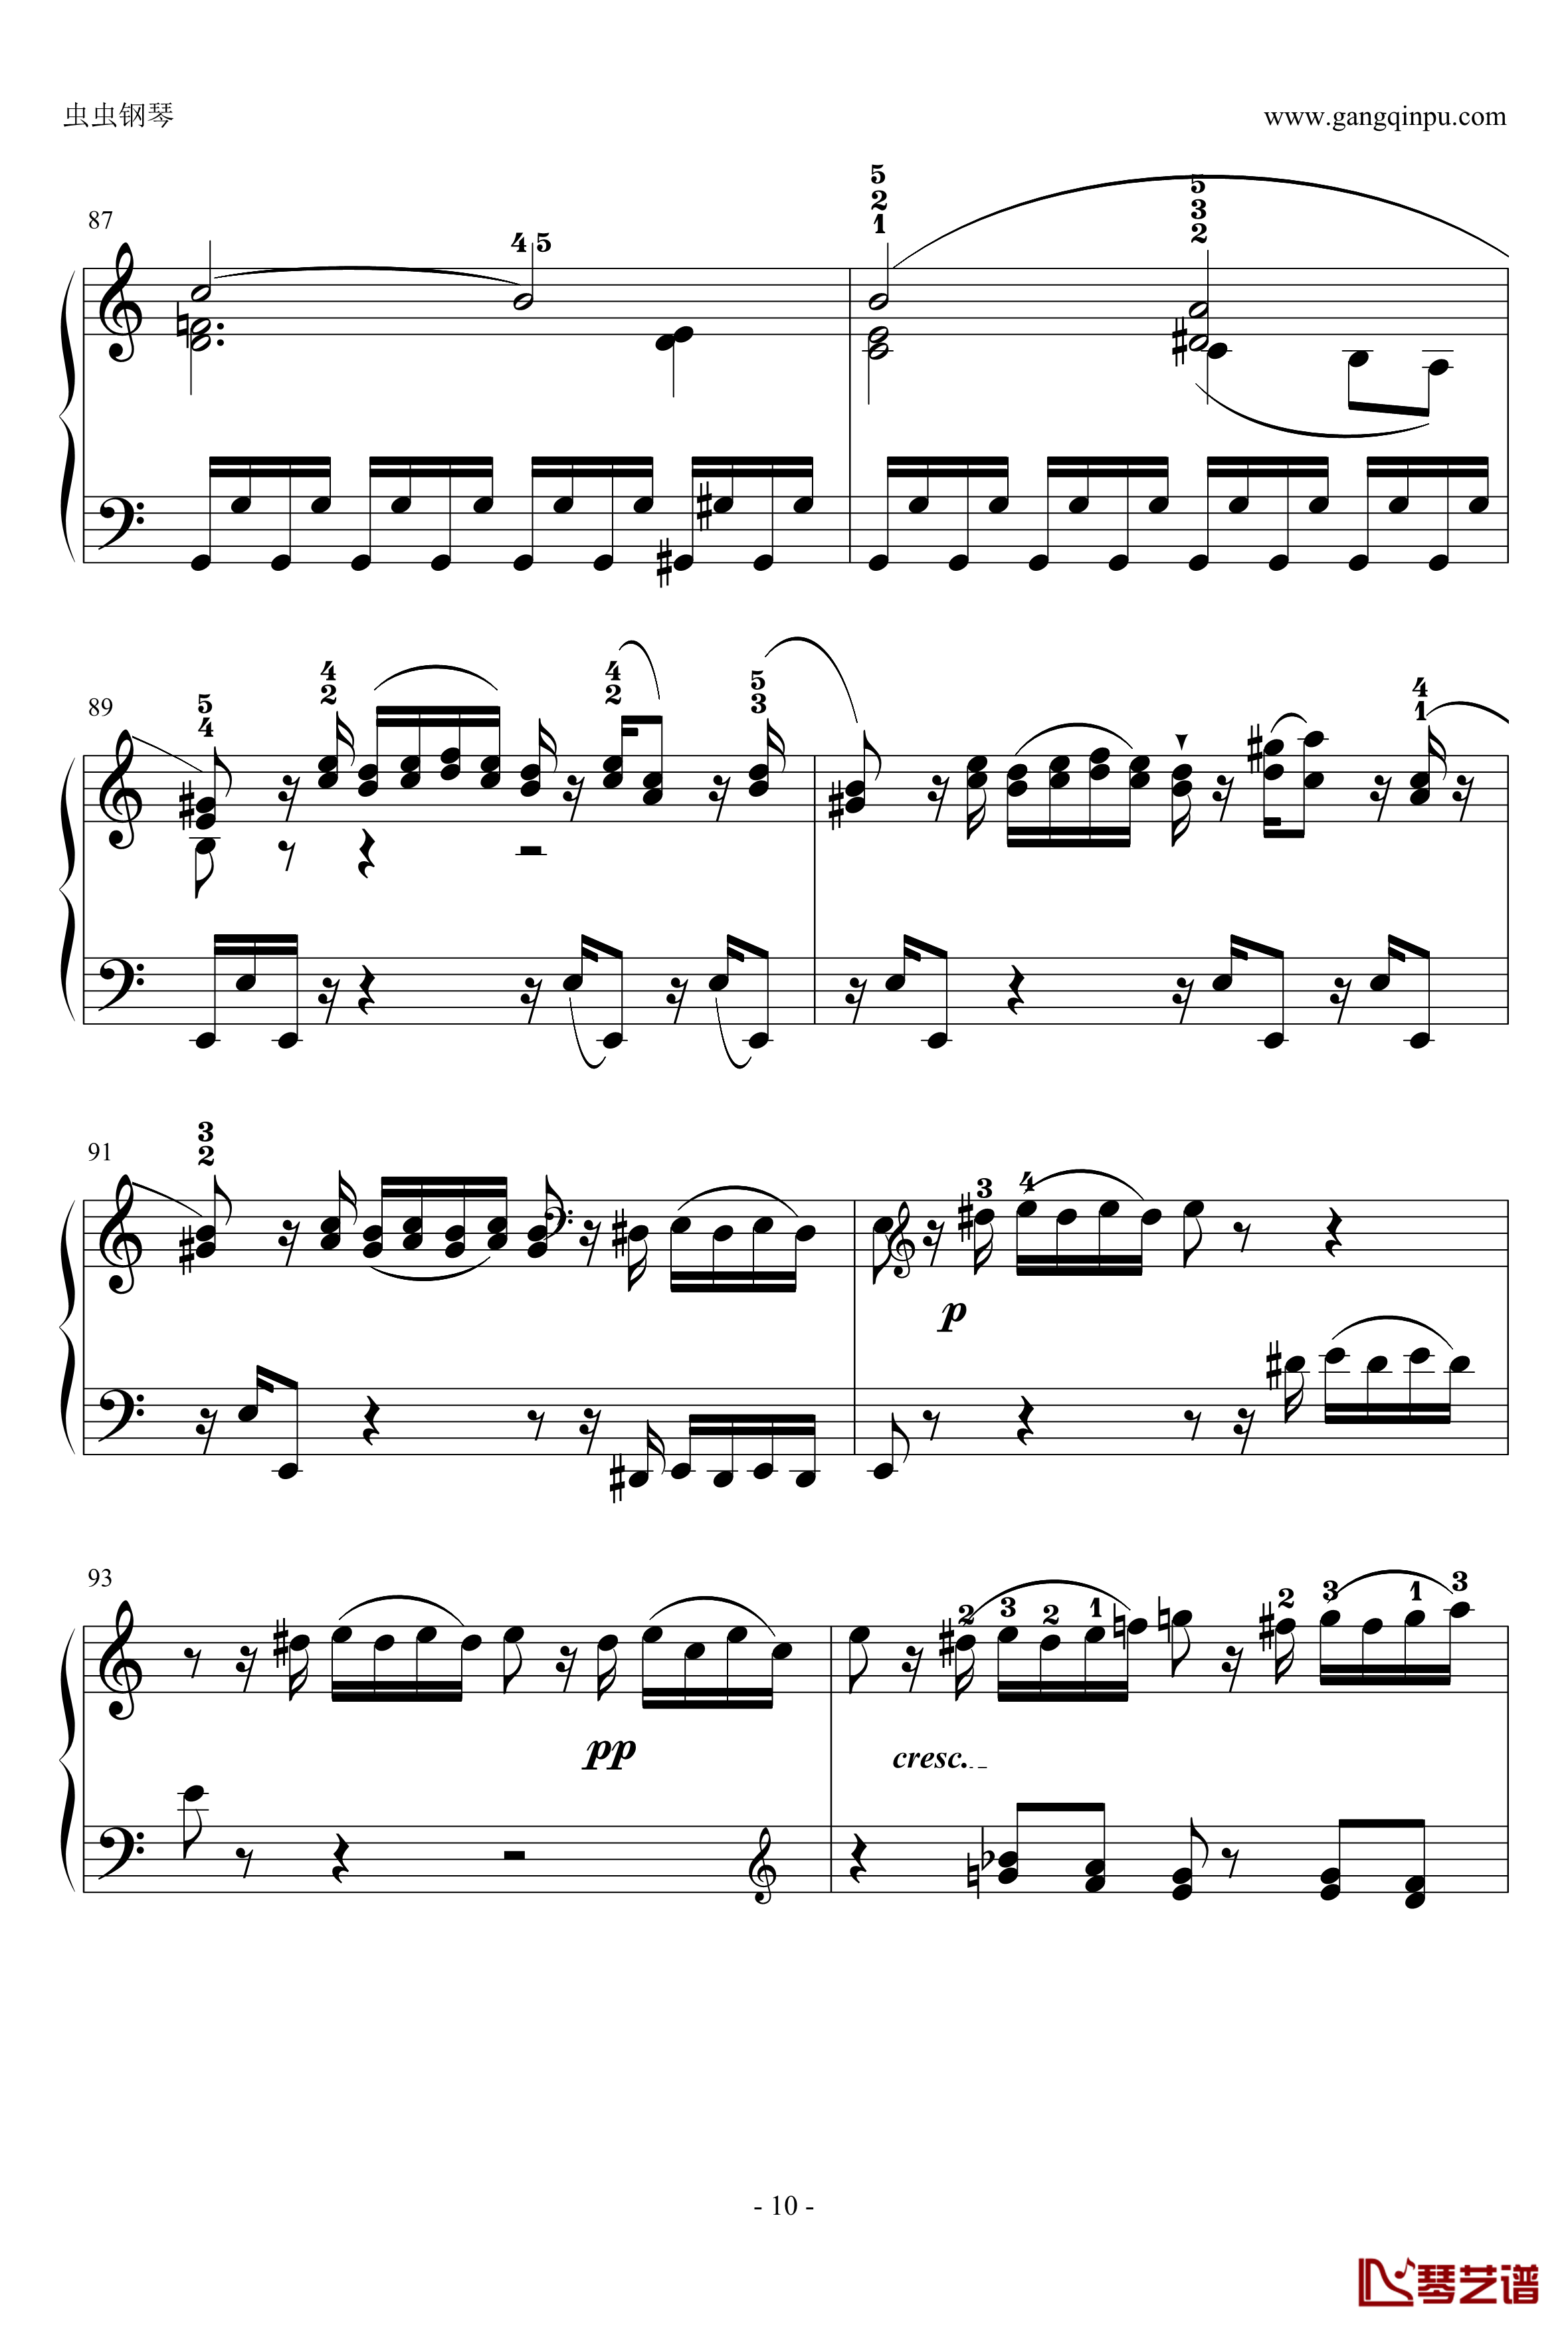 C大调奏鸣曲钢琴谱第一乐章-海顿10